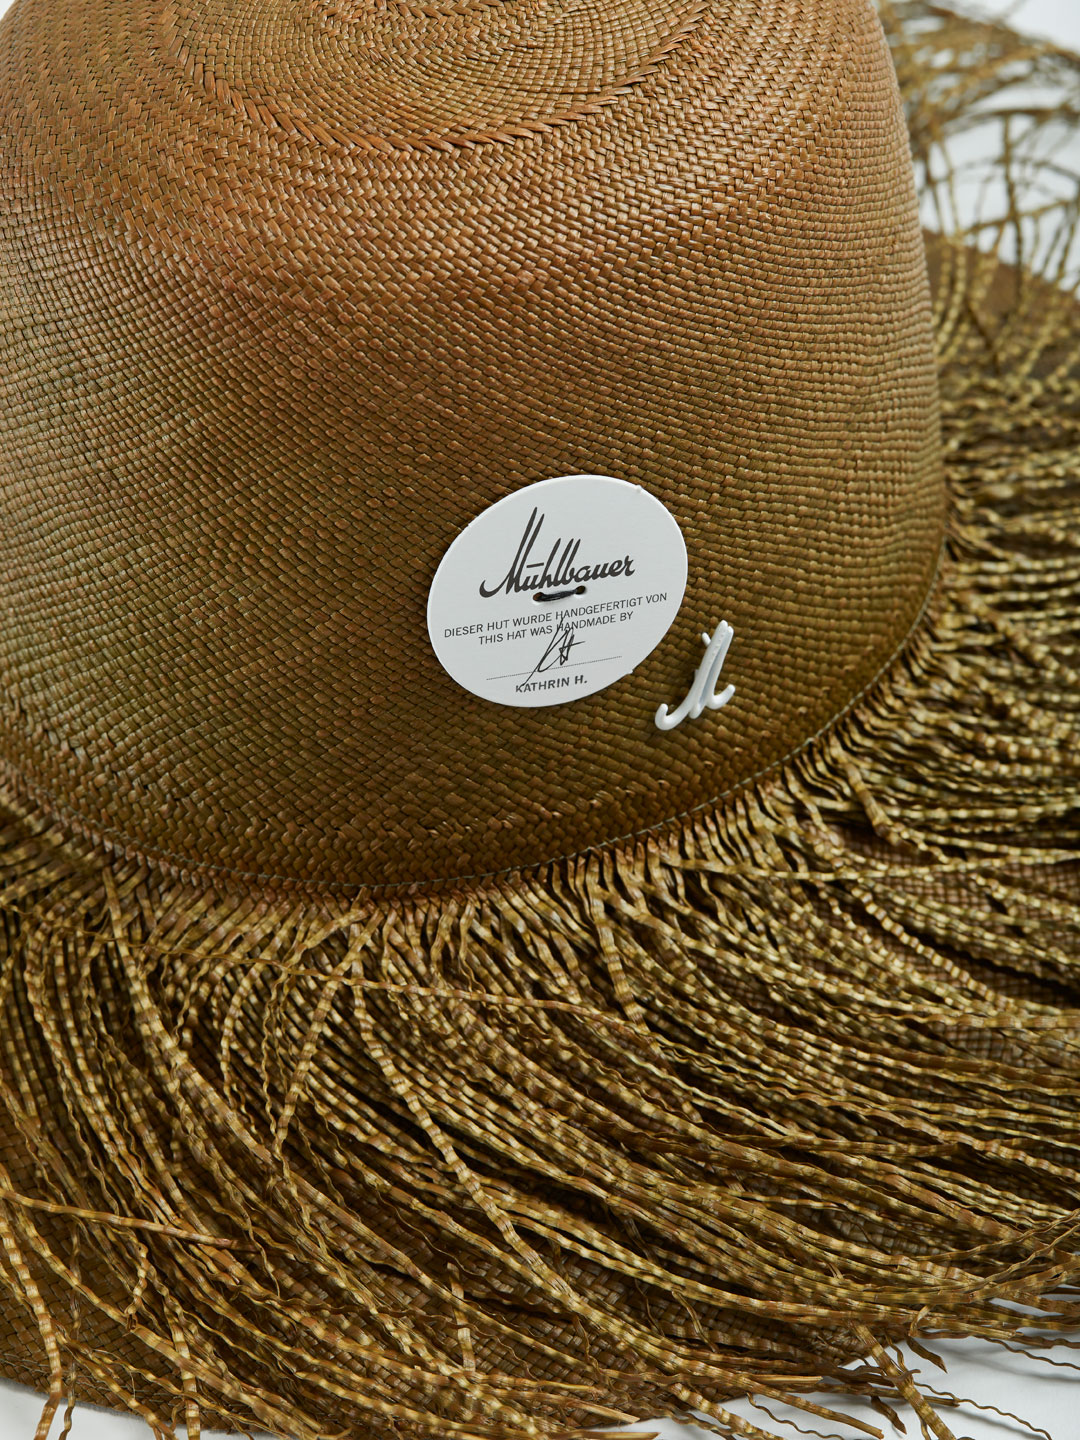 BRIT GIGI Long Fringe Capeline Hat - Khaki